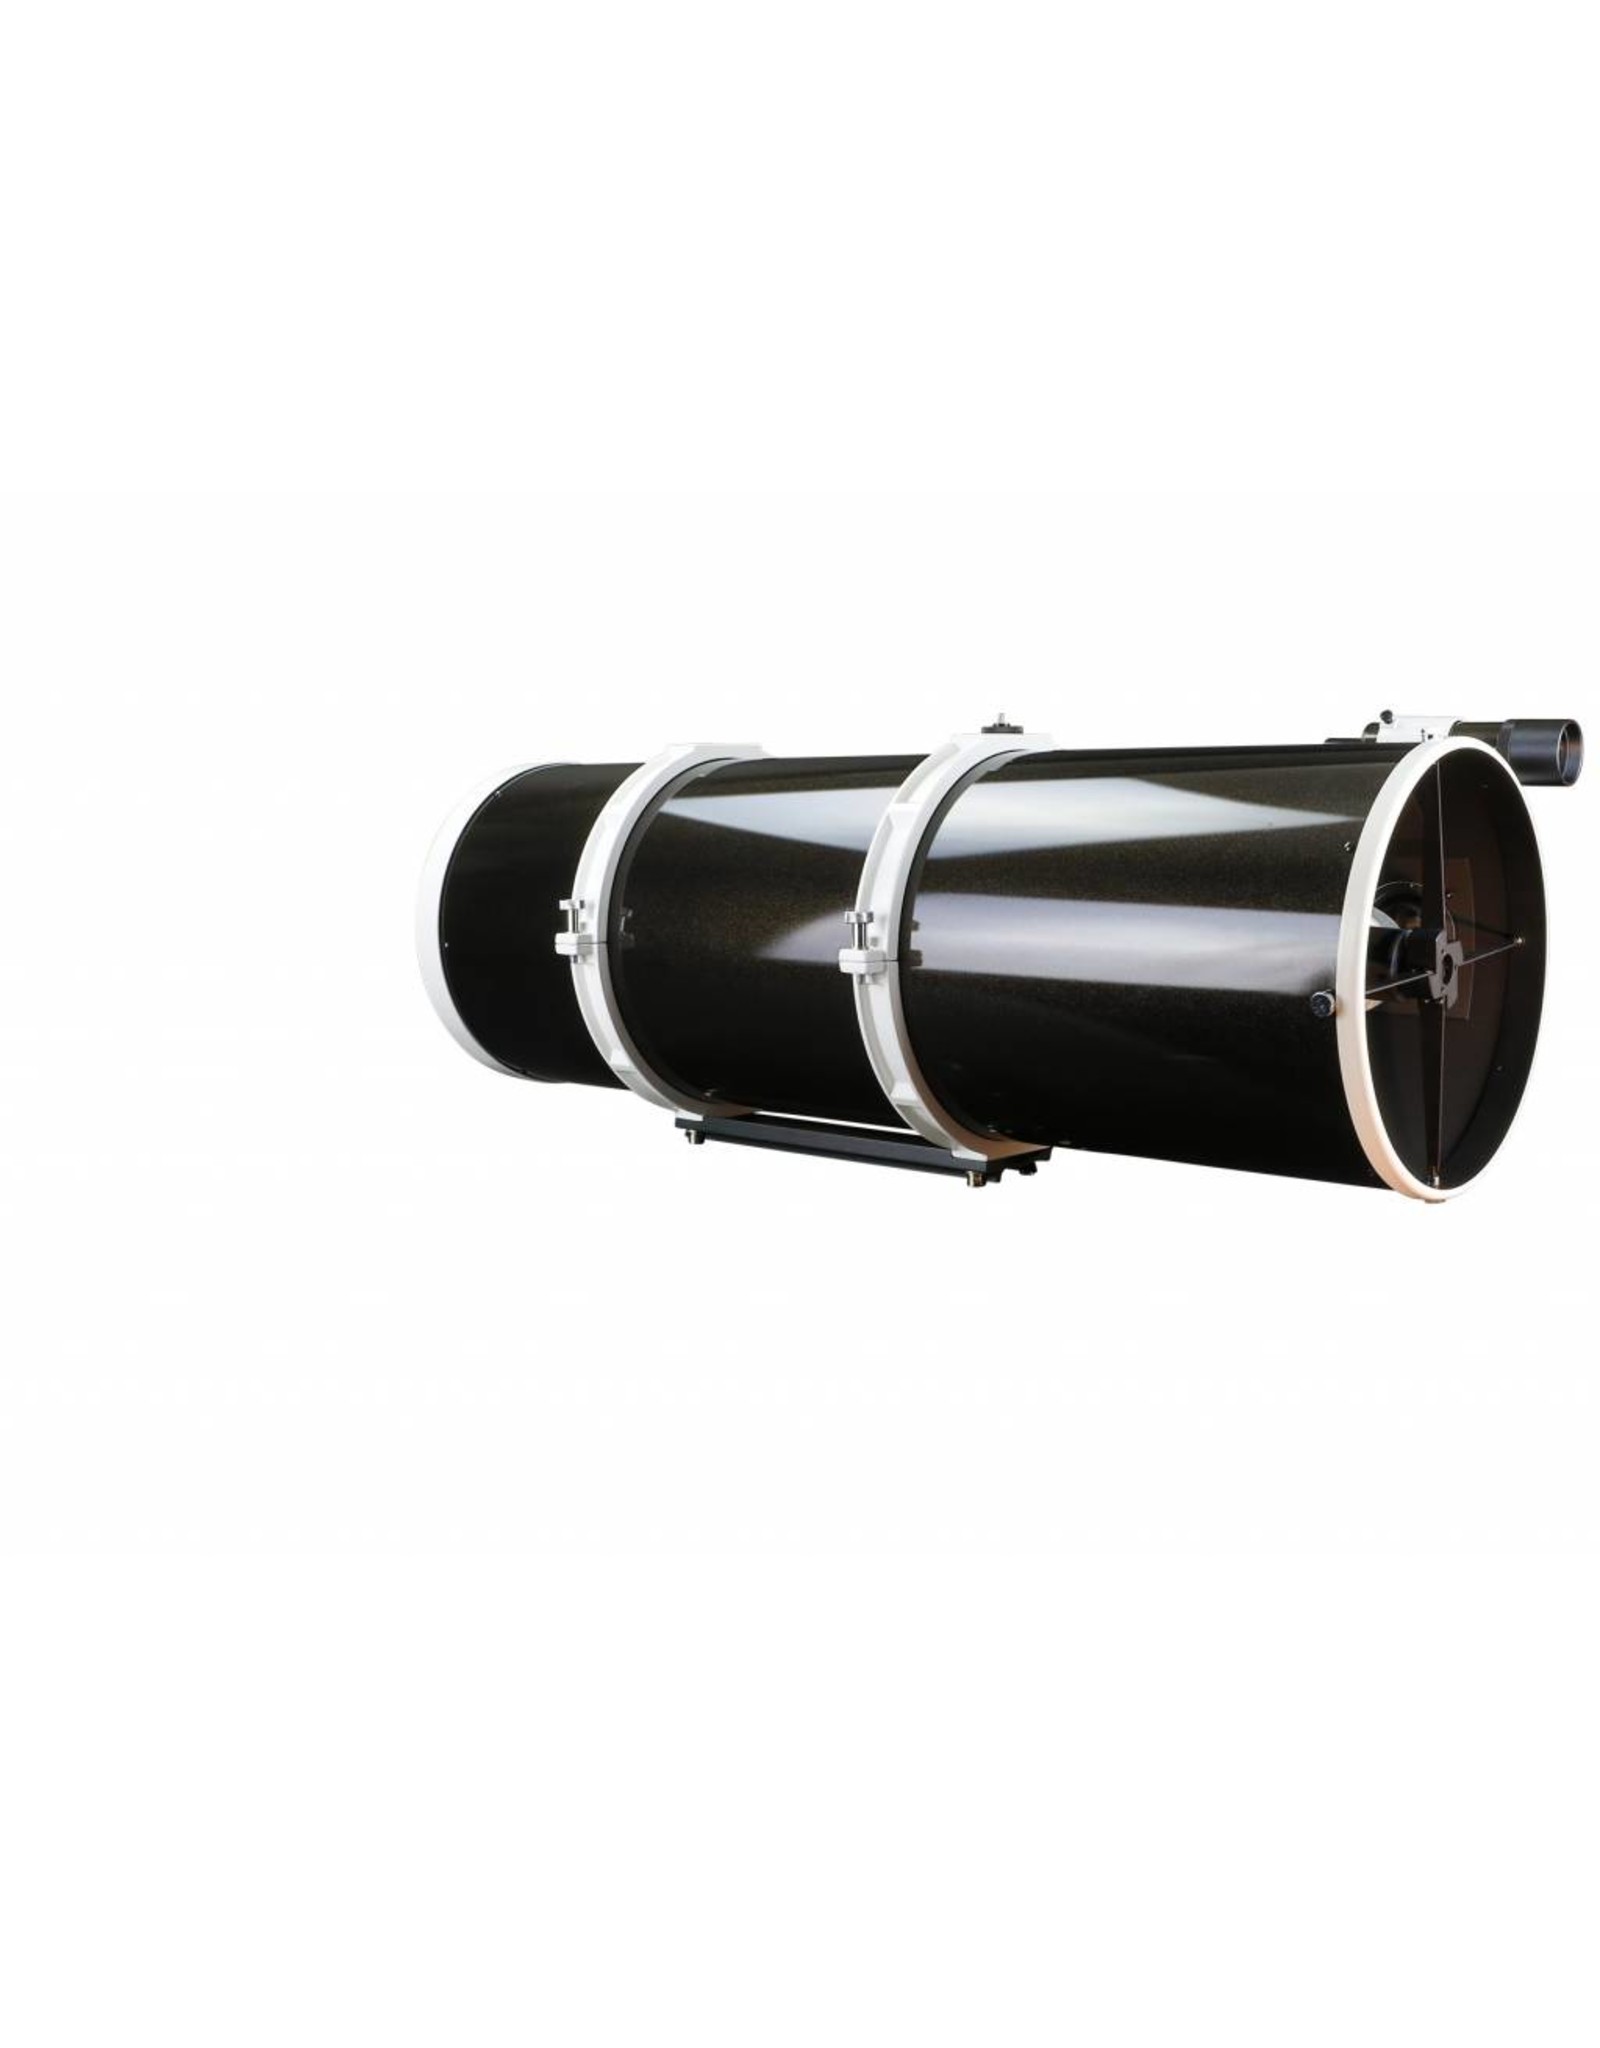 Sky-Watcher Sky-Watcher Quattro 300P Imaging Newtonian 12" (305 mm)